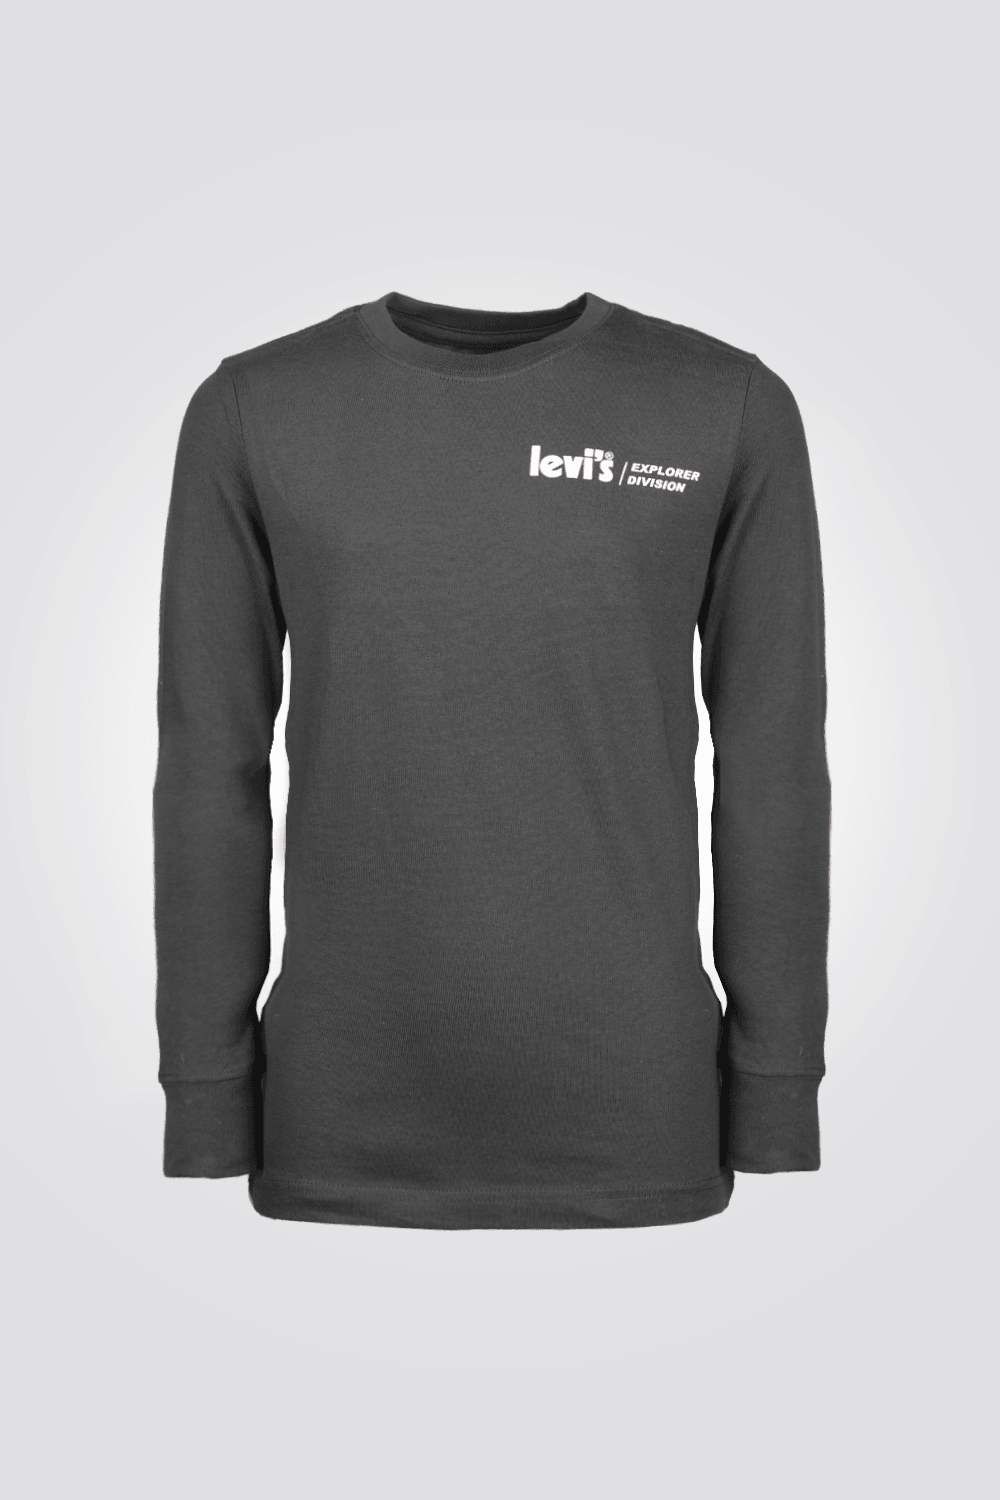 LEVI'S - חולצה הדפס לוגו ליוויס בצבע שחור לנערים - MASHBIR//365